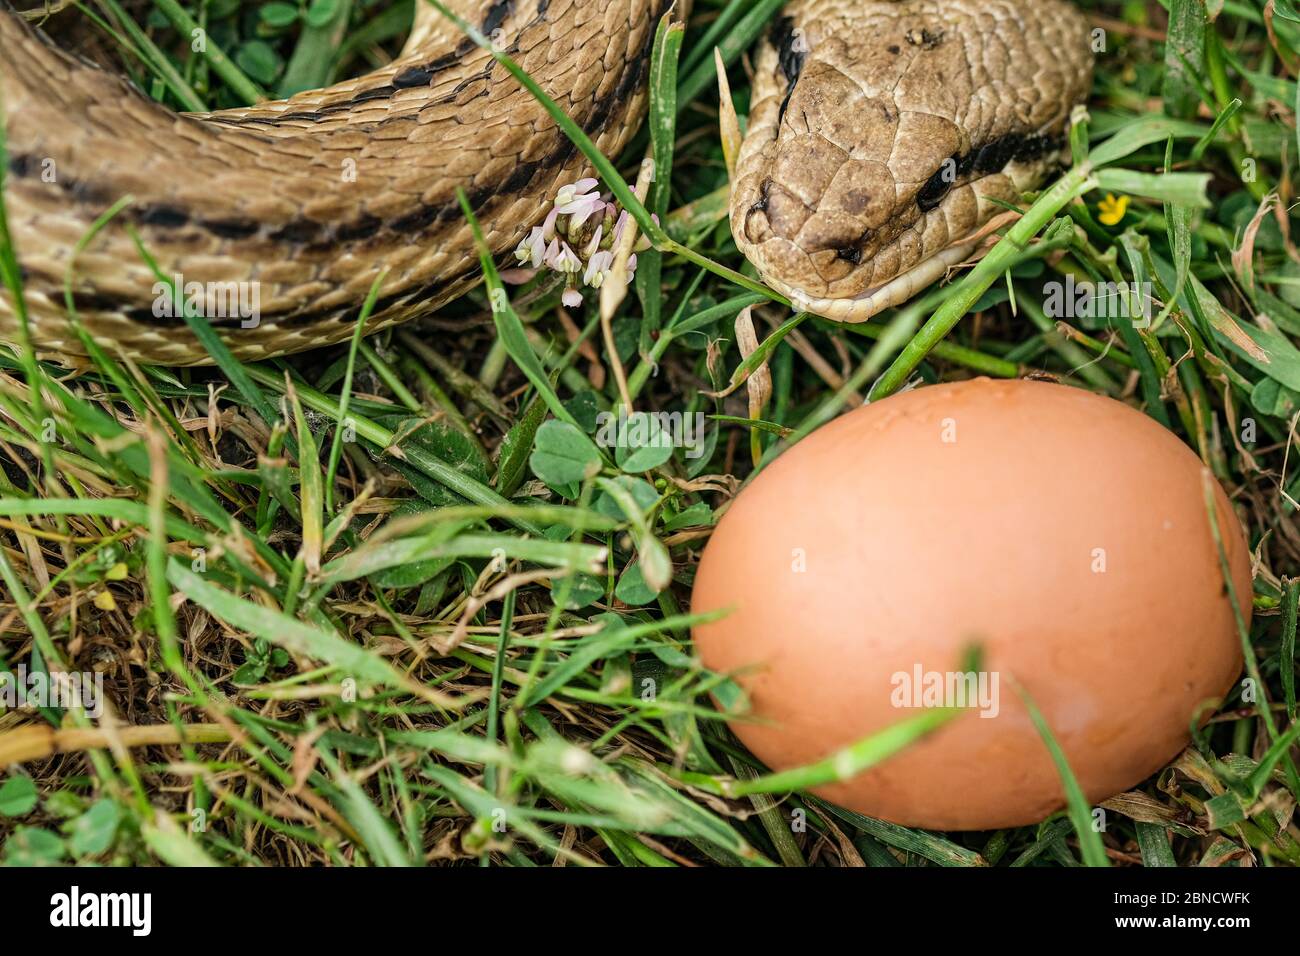 Snake egg eater species,predator reptile eye,skin details,cervone serpent Stock Photo